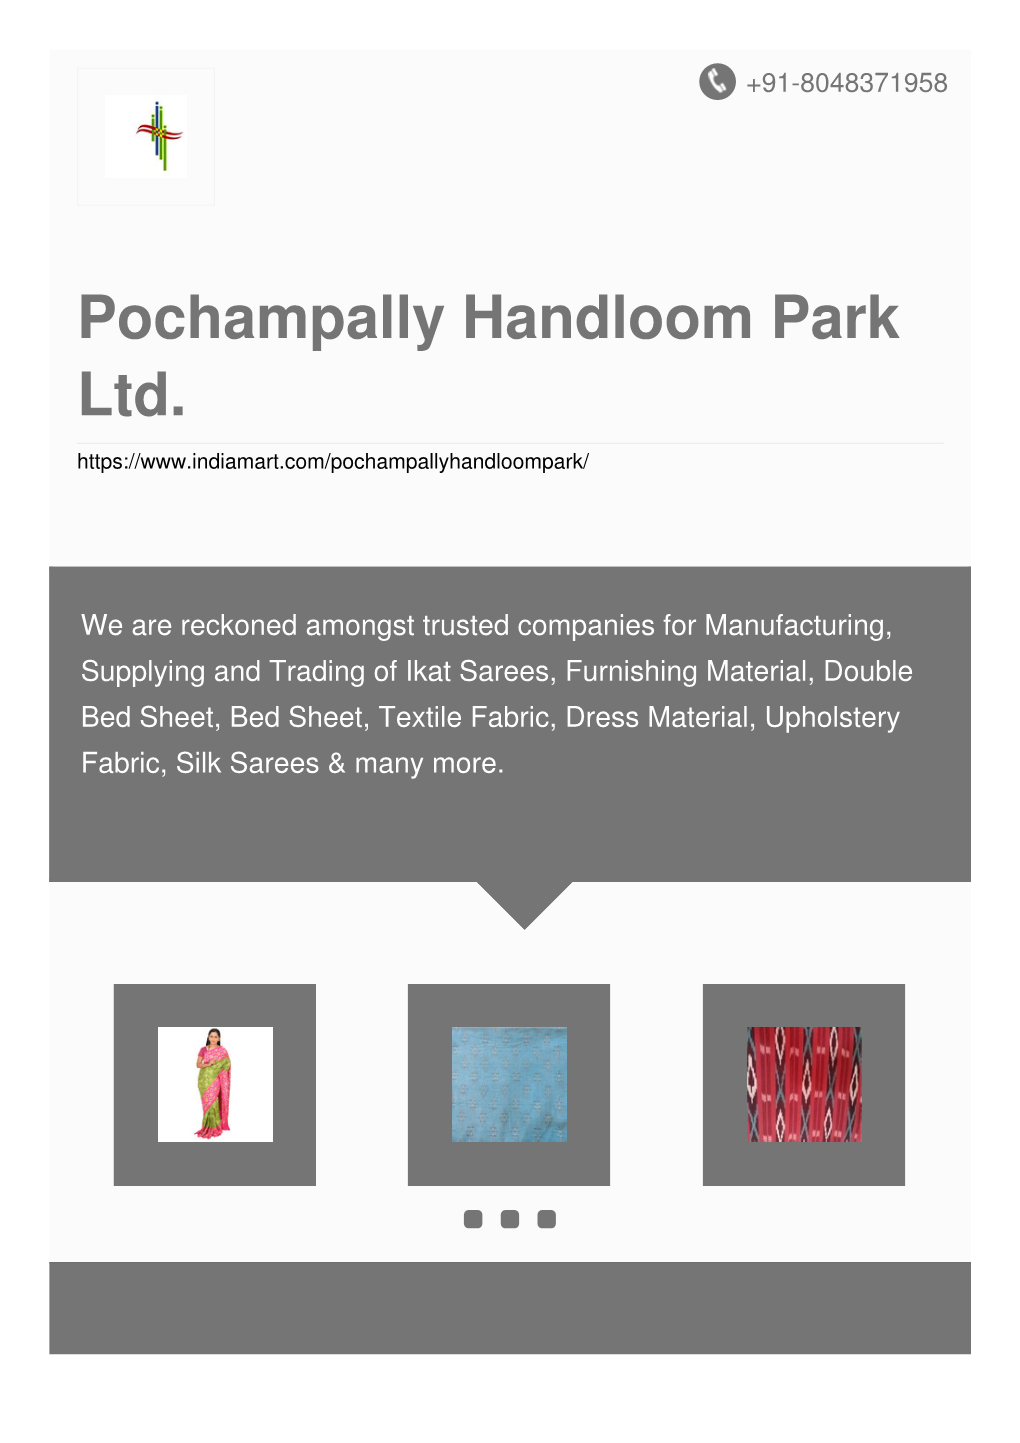 Pochampally Handloom Park Ltd